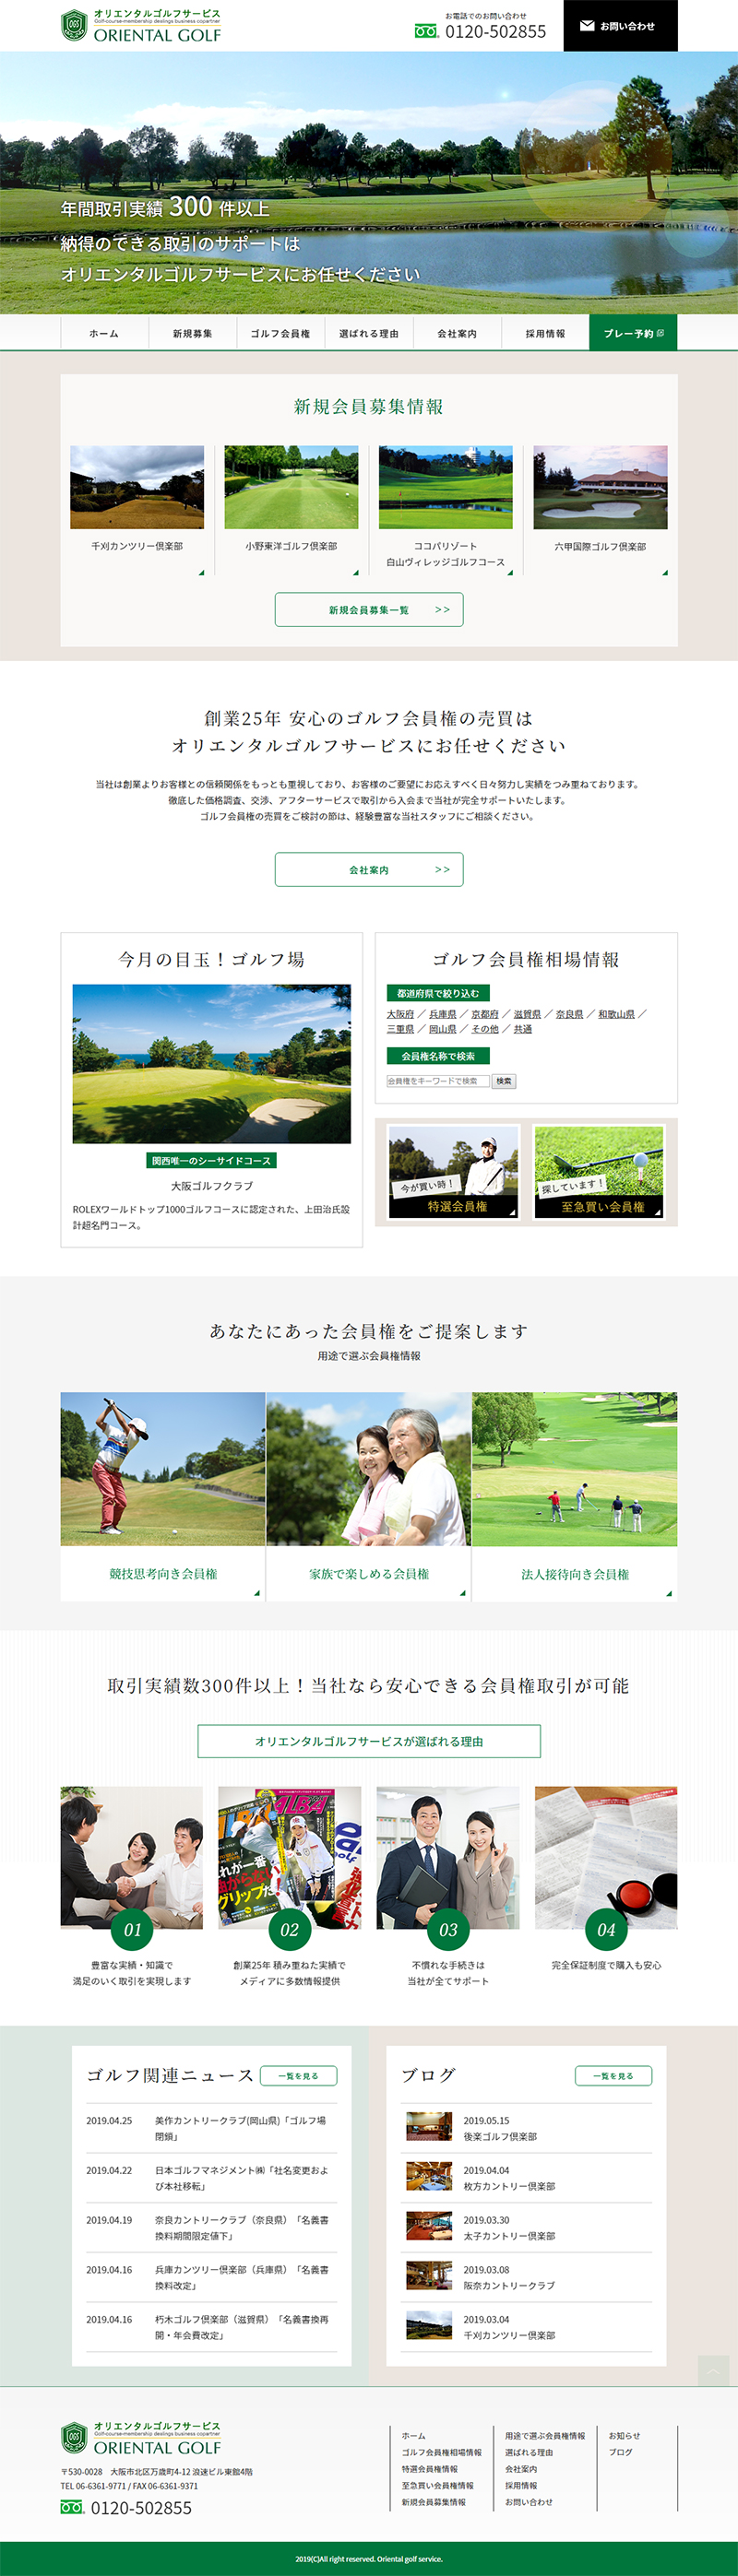 オリエンタルゴルフサービス様サイト